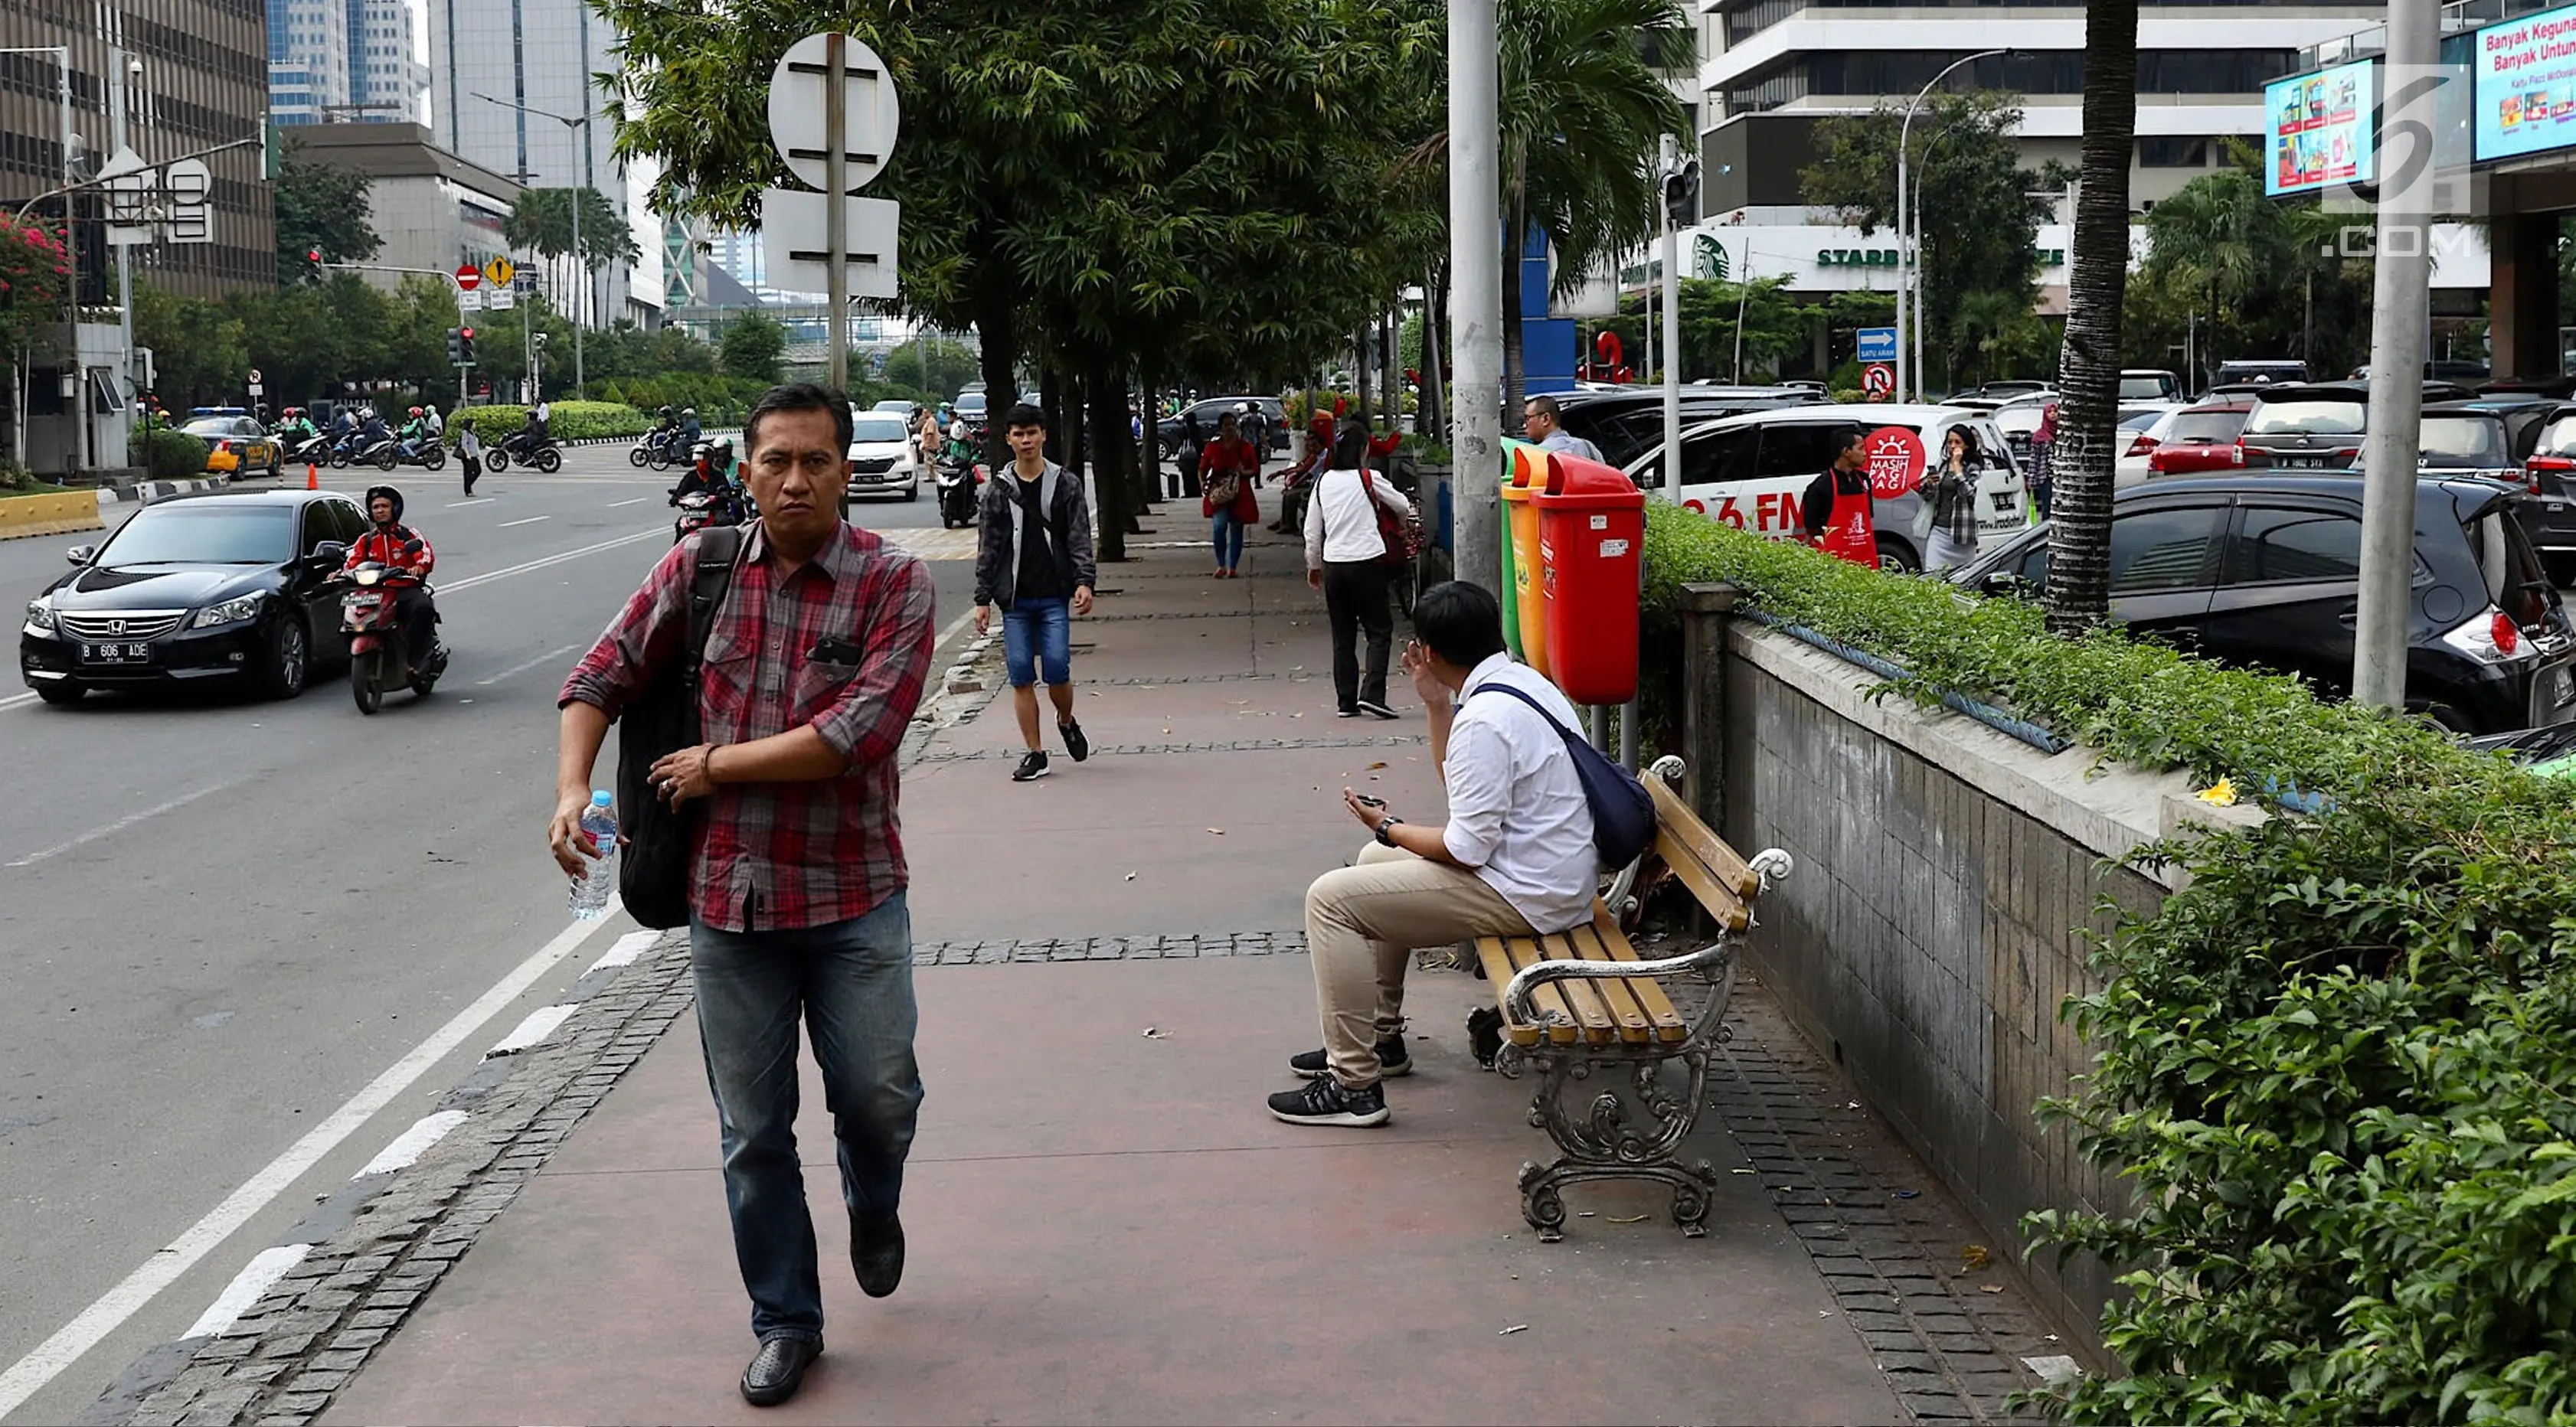 Pejalan kaki berjalan di trotoar kawasan MH Thamrin, Jakarta, Selasa (6/3). Penataan jalan dan trotoar kawasan Sudirman hingga MH Thamrin untuk mempersiapkan keindahan kawasan itu sebagai jalan protokol utama di Jakarta. (Liputan6.com/Immanuel Antonius)